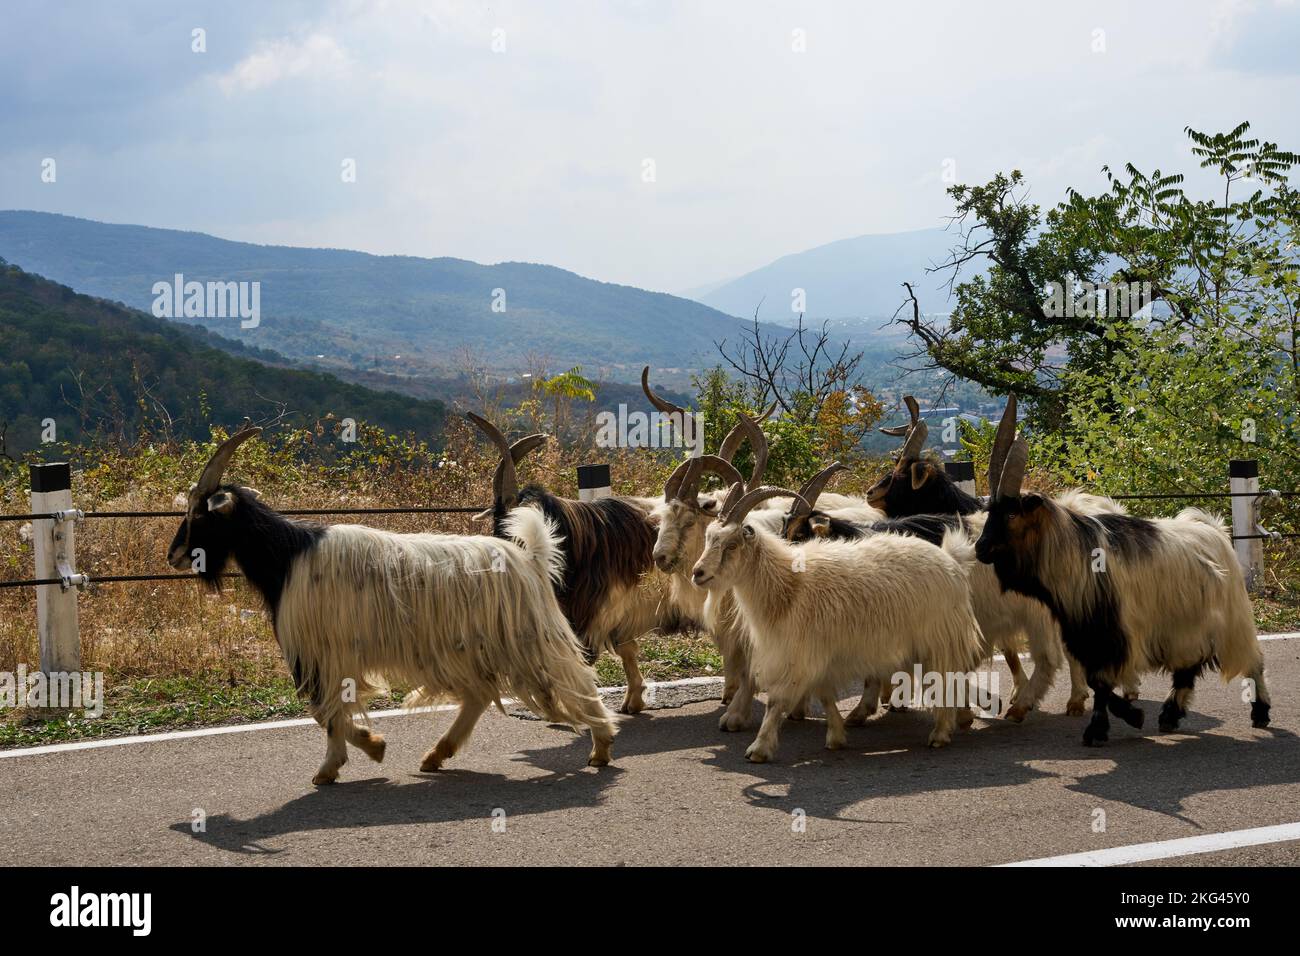 Ziegenherde, Vorhut einer großen Schafherde, herbstlicher Abtrieb der Schafherden und Ziegen, Straße Nr 27 bei Bodavi, Kaukasus, Georgien Stock Photo